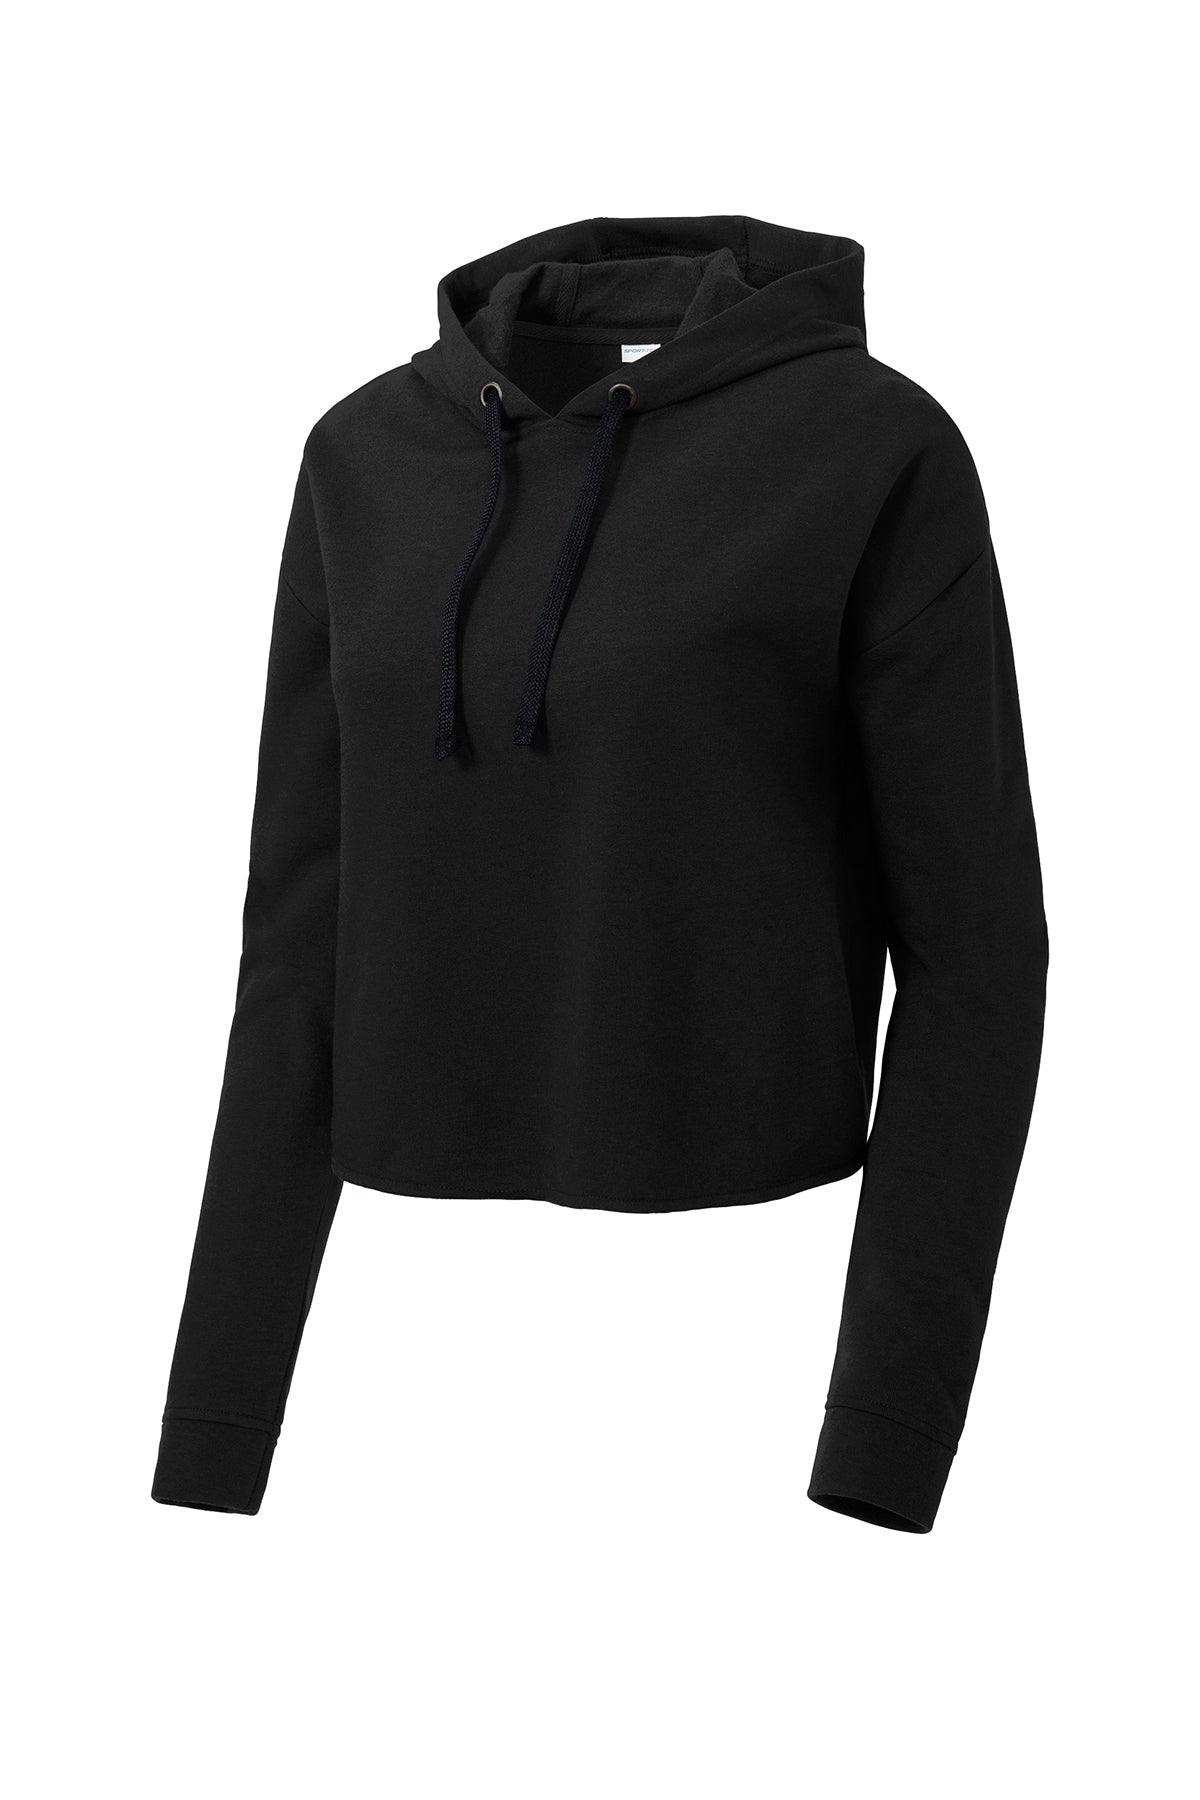 LST298 Sport-Tek ® Ladies PosiCharge ® Tri-Blend Wicking Fleece Crop Hooded Pullover